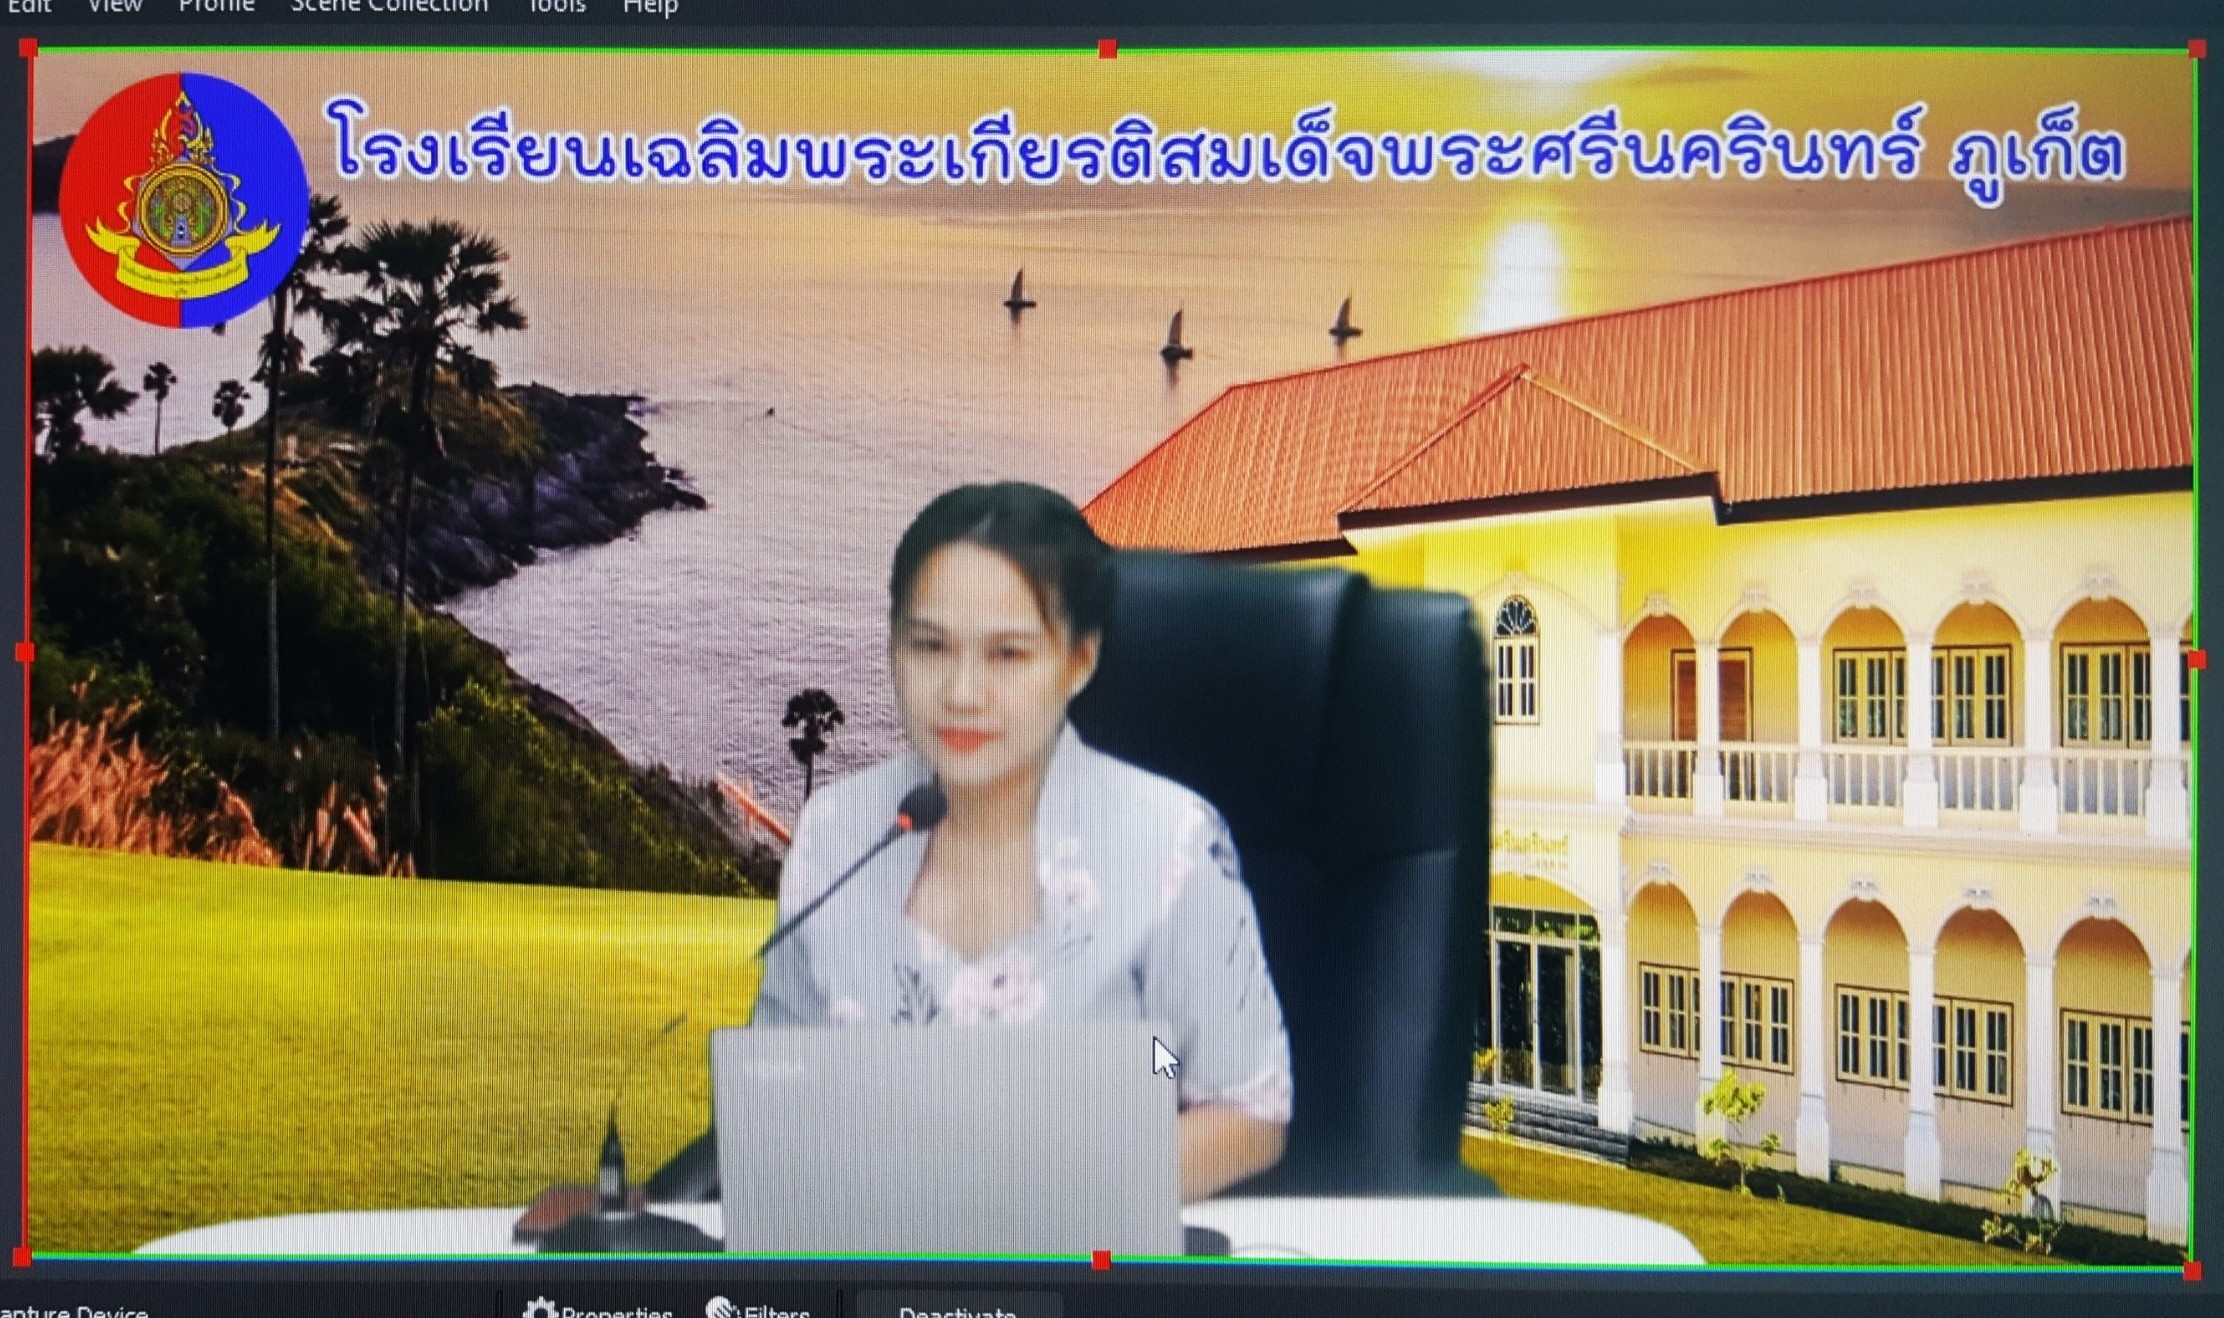 วันอังคาร ที่ 20 กันยายน 2565 นางวิไลลักษณ์ ตังสุรัตน์ หัวหน้ากลุ่มสาระการเรียนรู้วิทยาศาสตร์และเทคโนโลยี และนางสาวสุพิชญา อังคะมาตย์ ครูกลุ่มสาระการเรียนรู้ภาษาไทย โรงเรียนเฉลิมพระเกียรติสมเด็จพระศรีนครินทร์ ภูเก็ต เข้ารับการประเมินคัดเลือกรางวัลโครงการ 